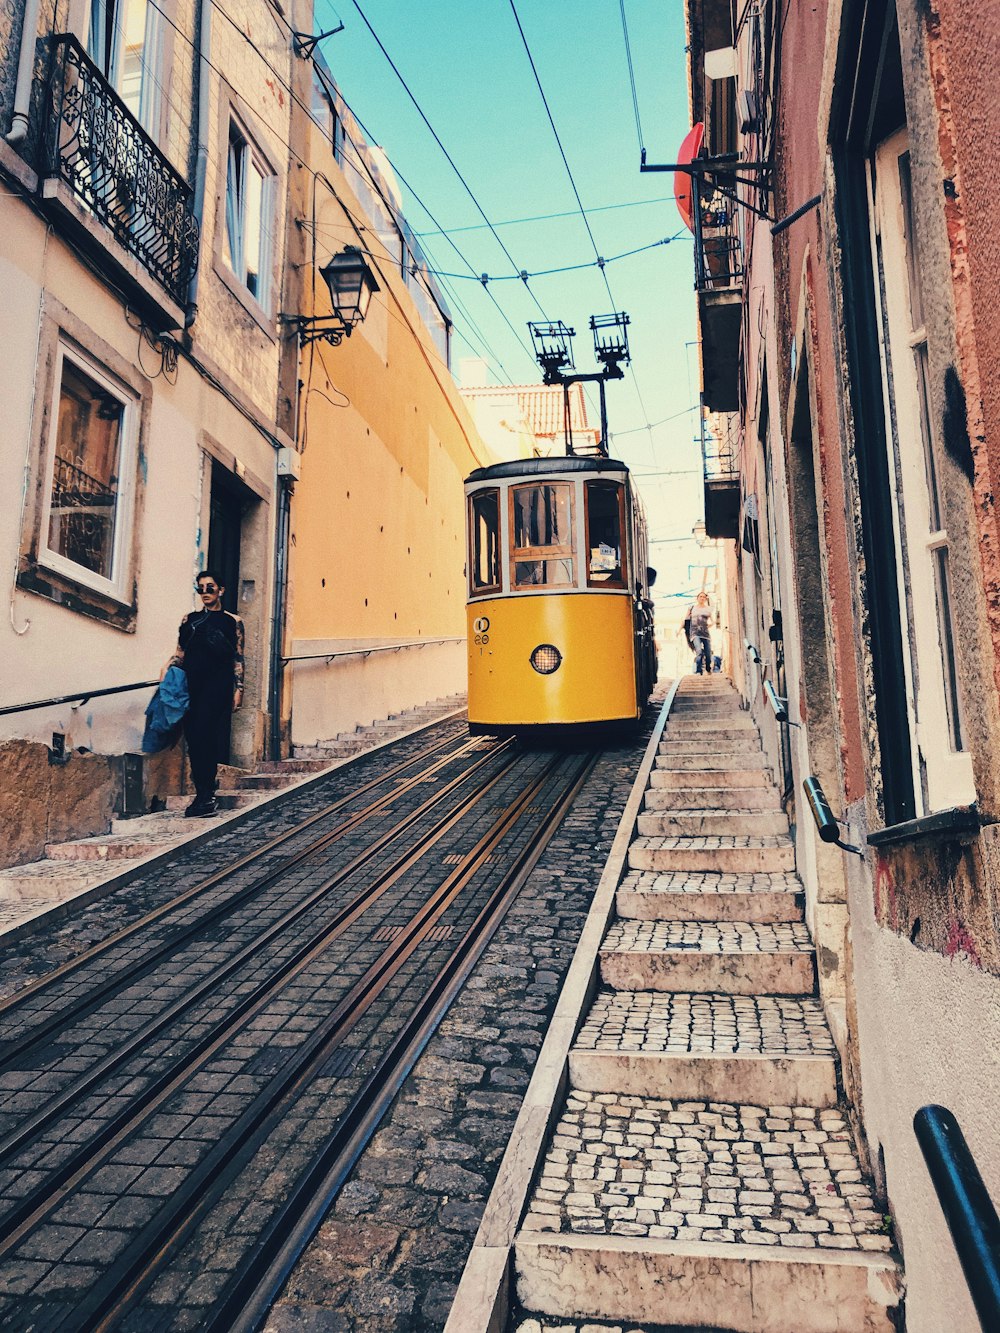 people walking near tram in between buildings during daytime